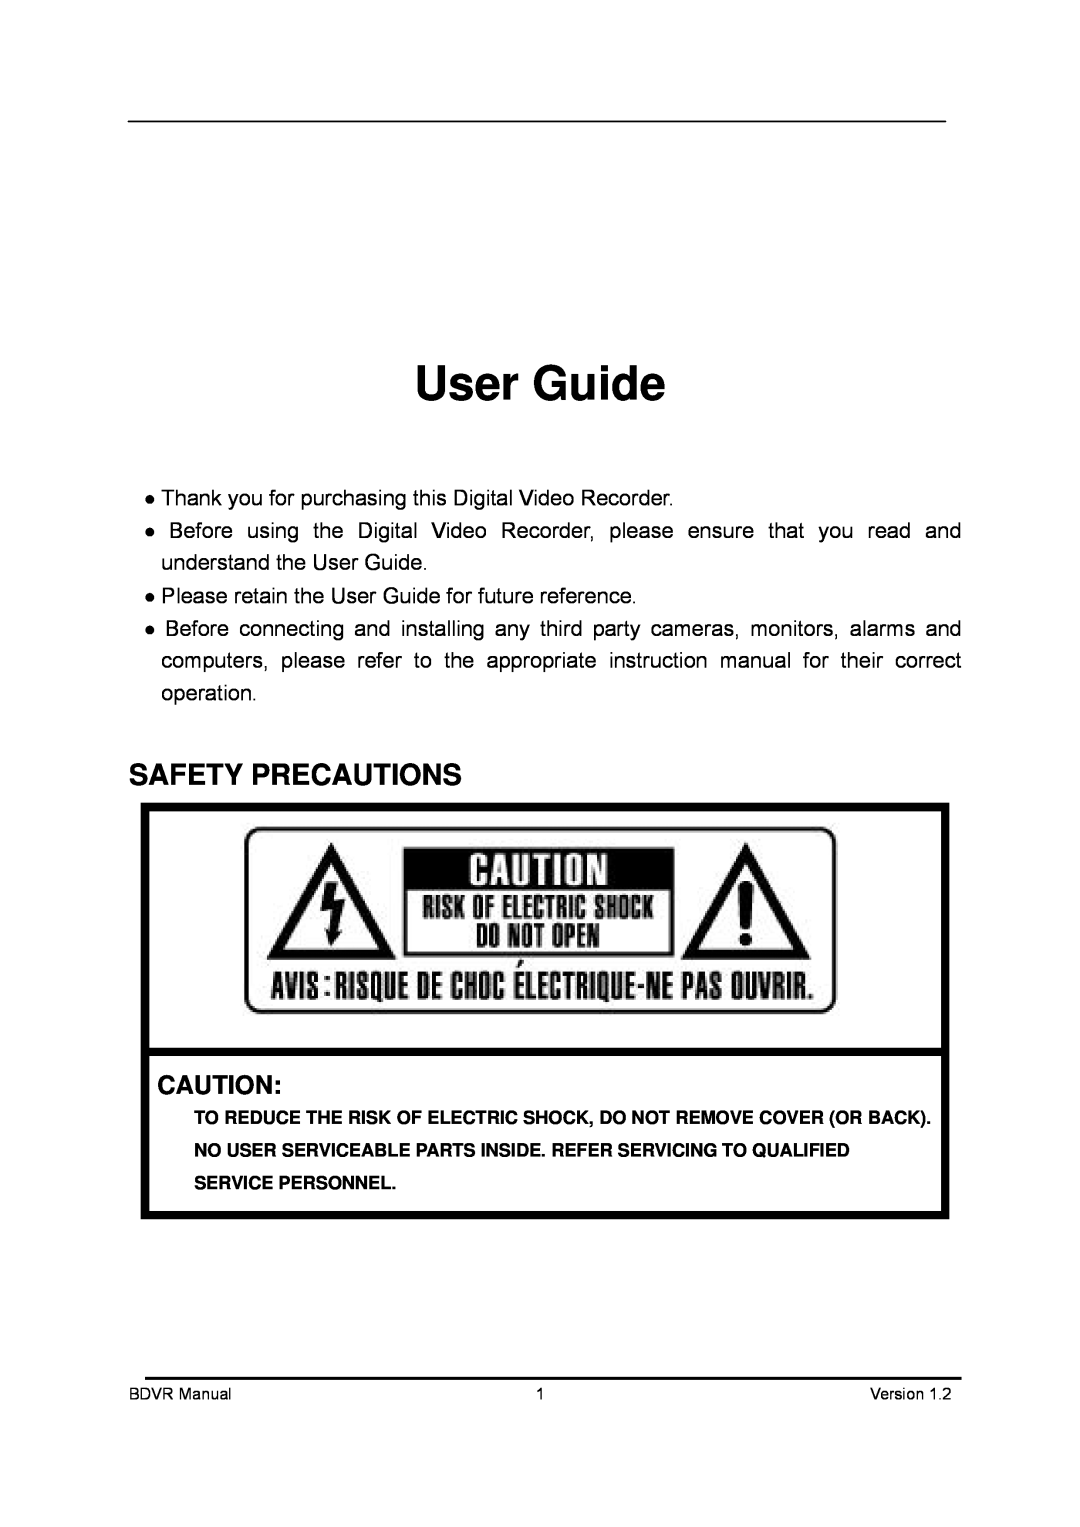 Genie BDVR-4, BDVR-8, BDVR-16 manual Safety Precautions, User Guide 